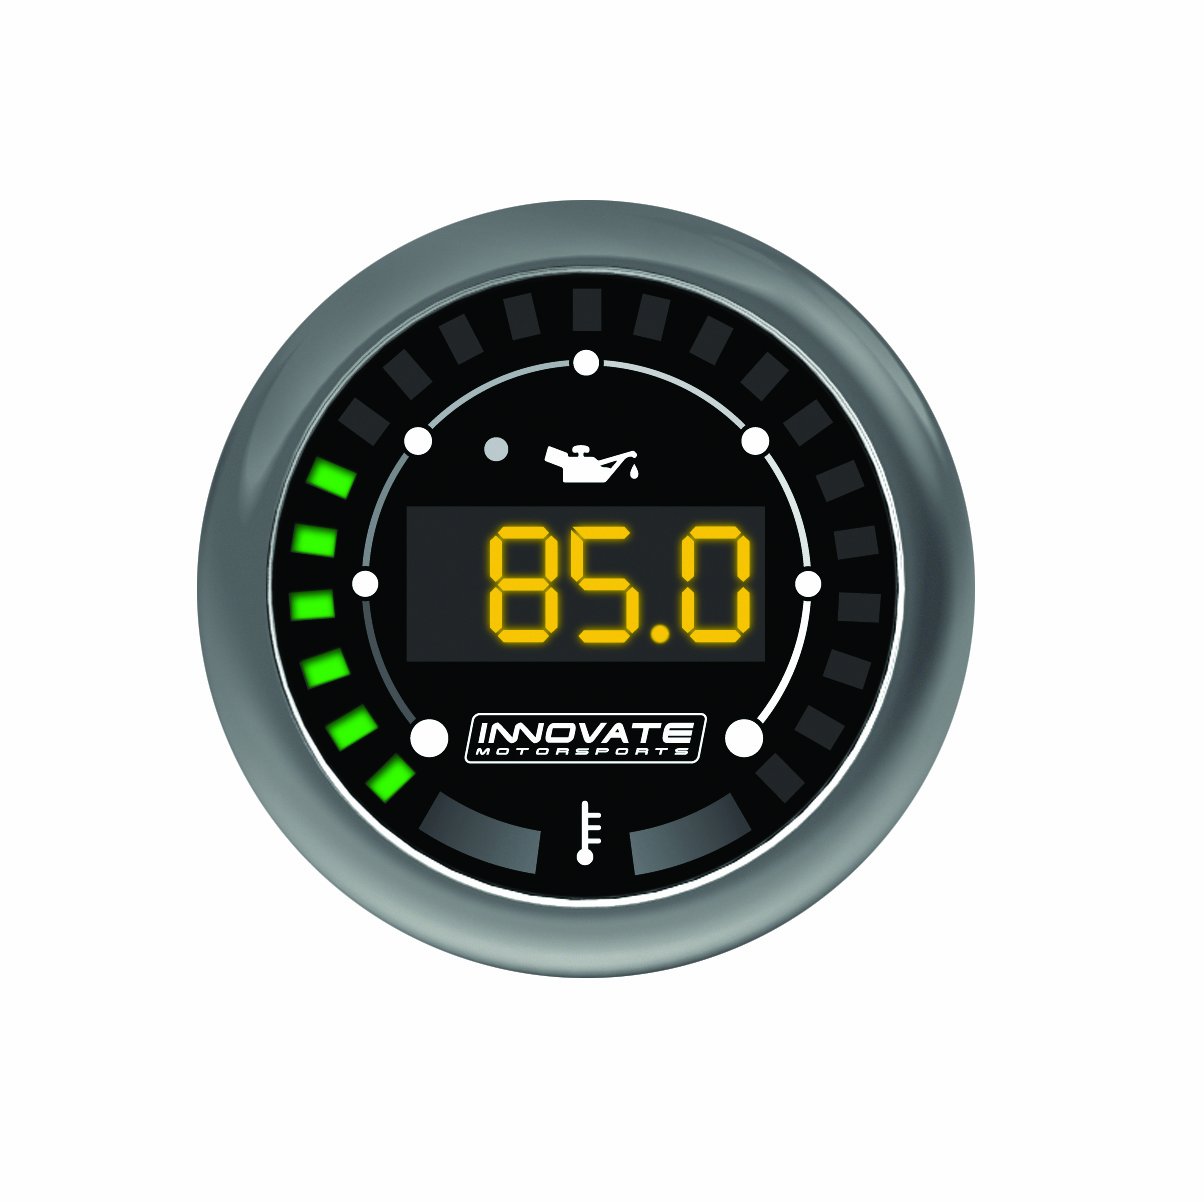 Innovate 3852 MTX-D: Digital, Öl temperatur und Druck messen Satz von Innovate Motorsports